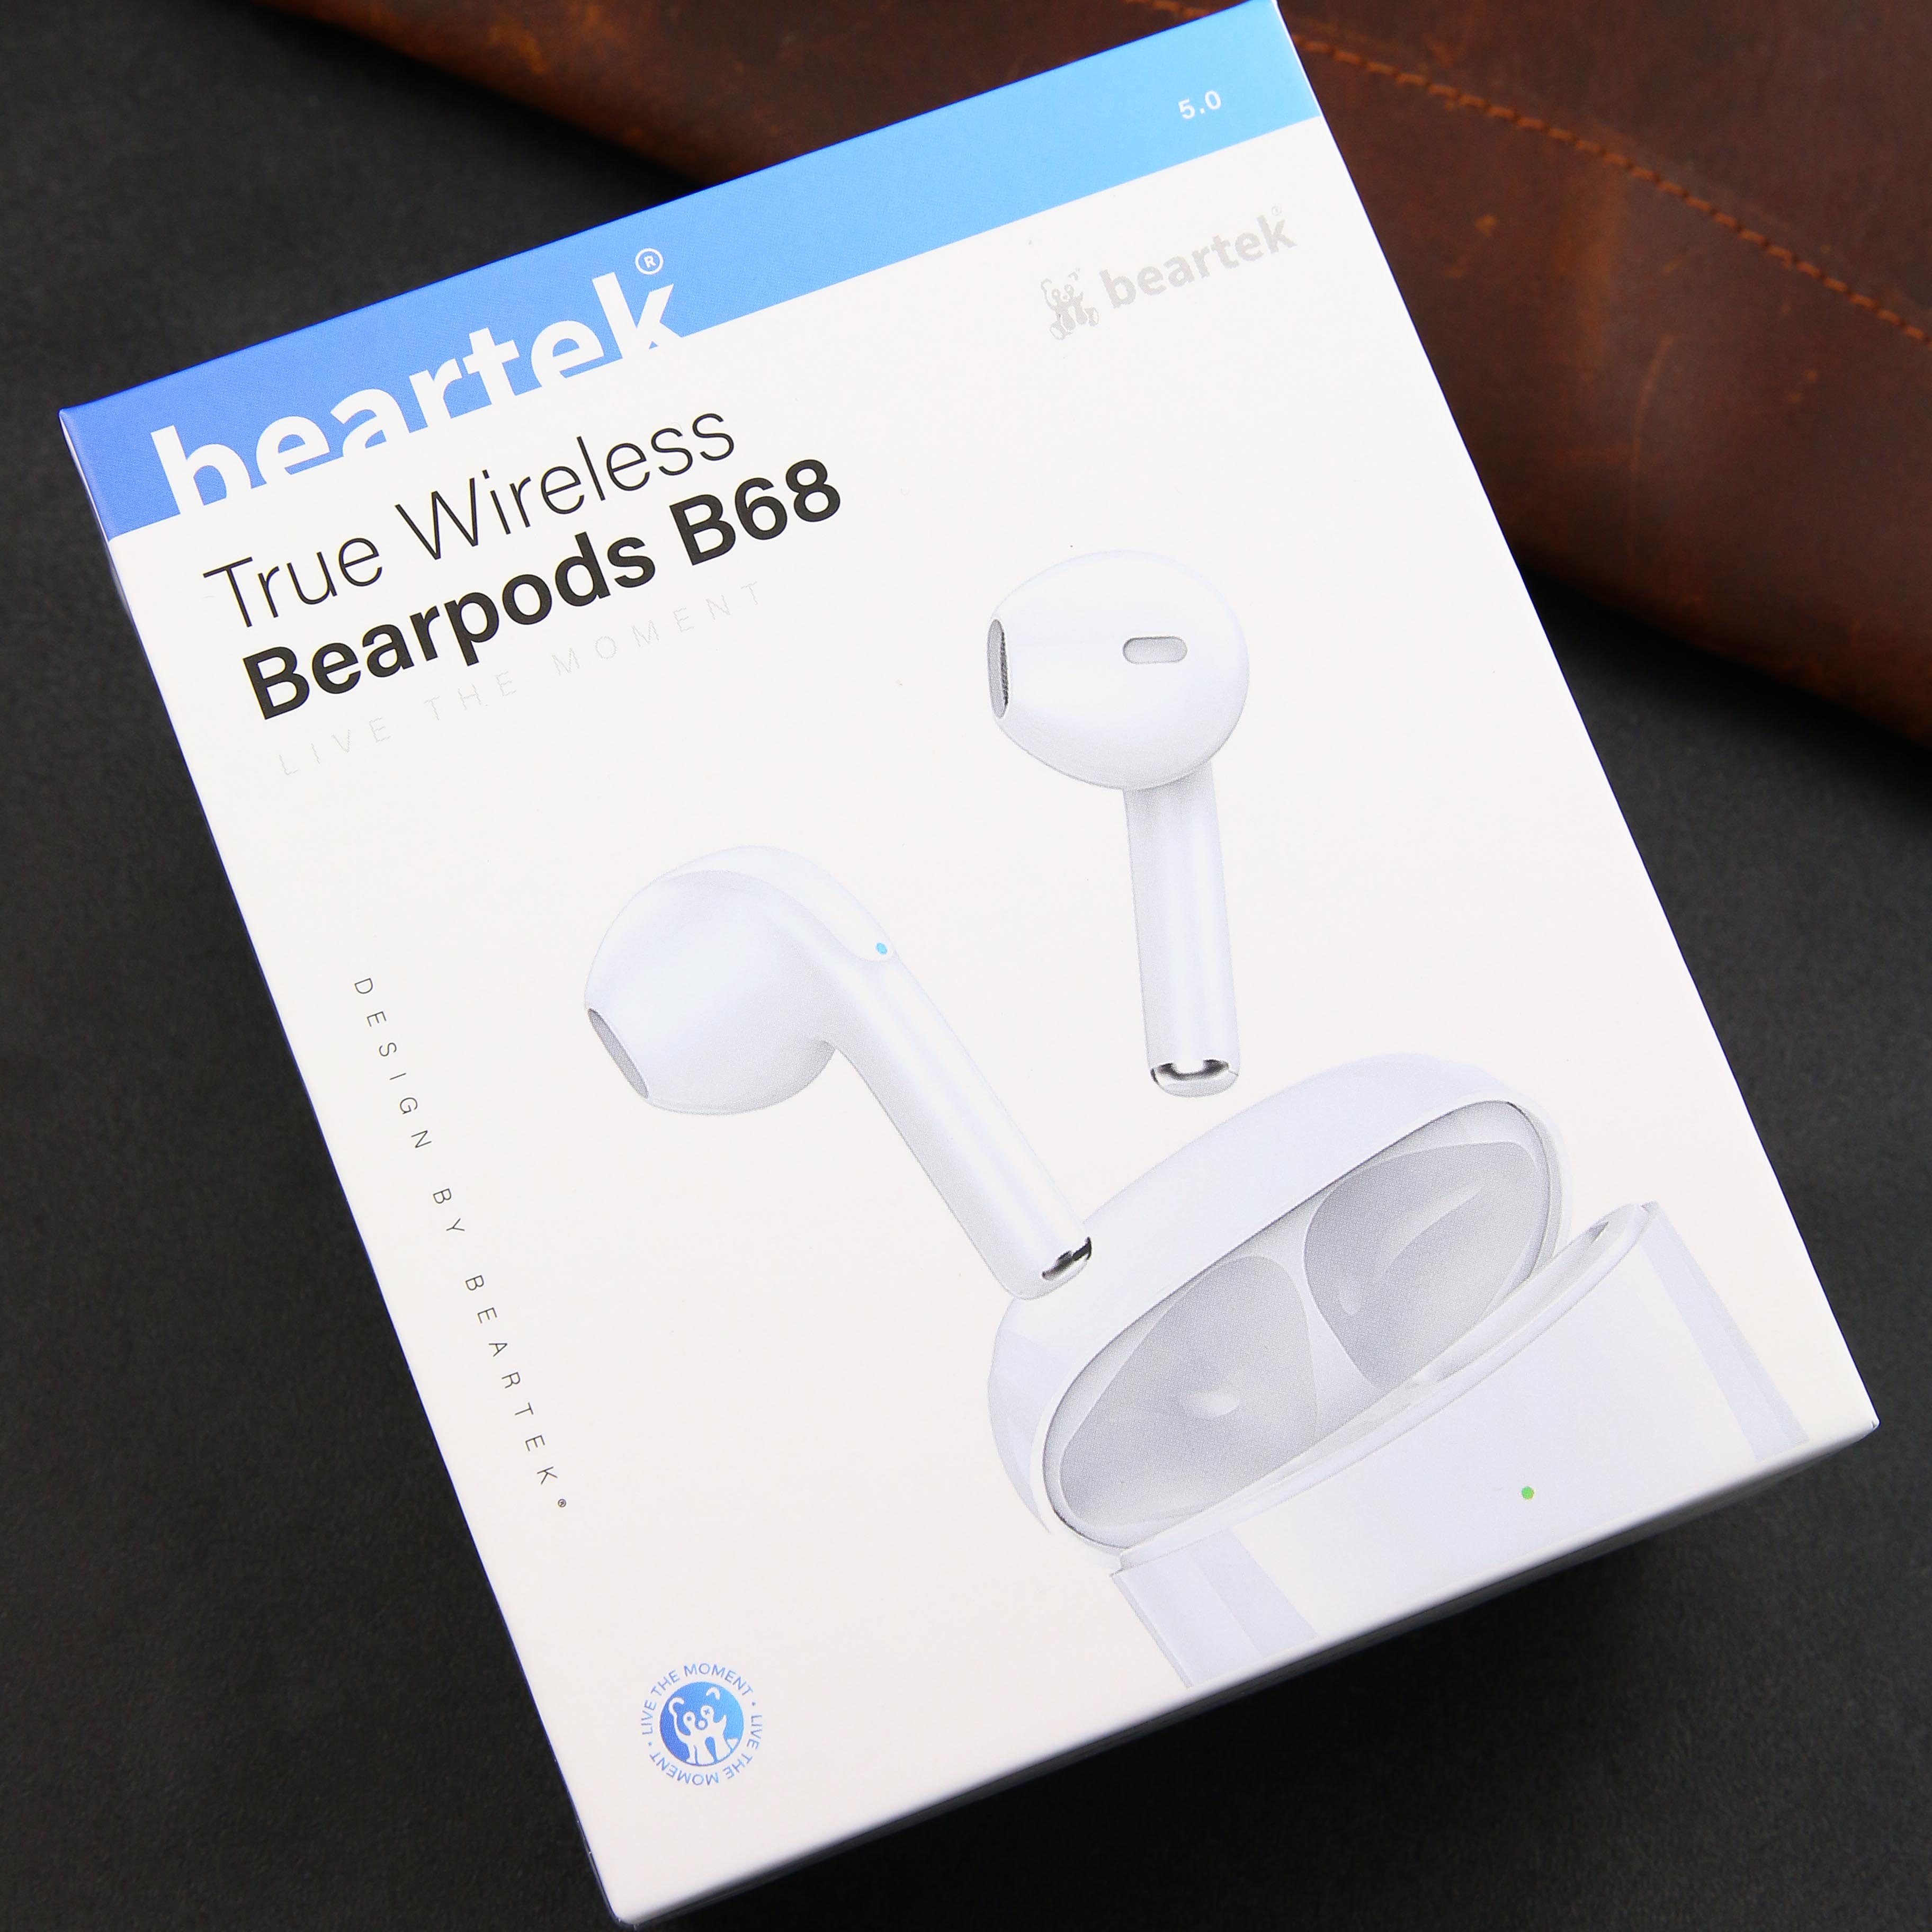 Tai nghe bluetooth không dây BEARTEK Bearbuds B68 True Wireless chống ồn hiệu quả - Thiết kế trẻ trung, cá tính – Định vị - Cảm ứng – Thời gian sử dụng lên tới 4h -  Hàng nhập khẩu